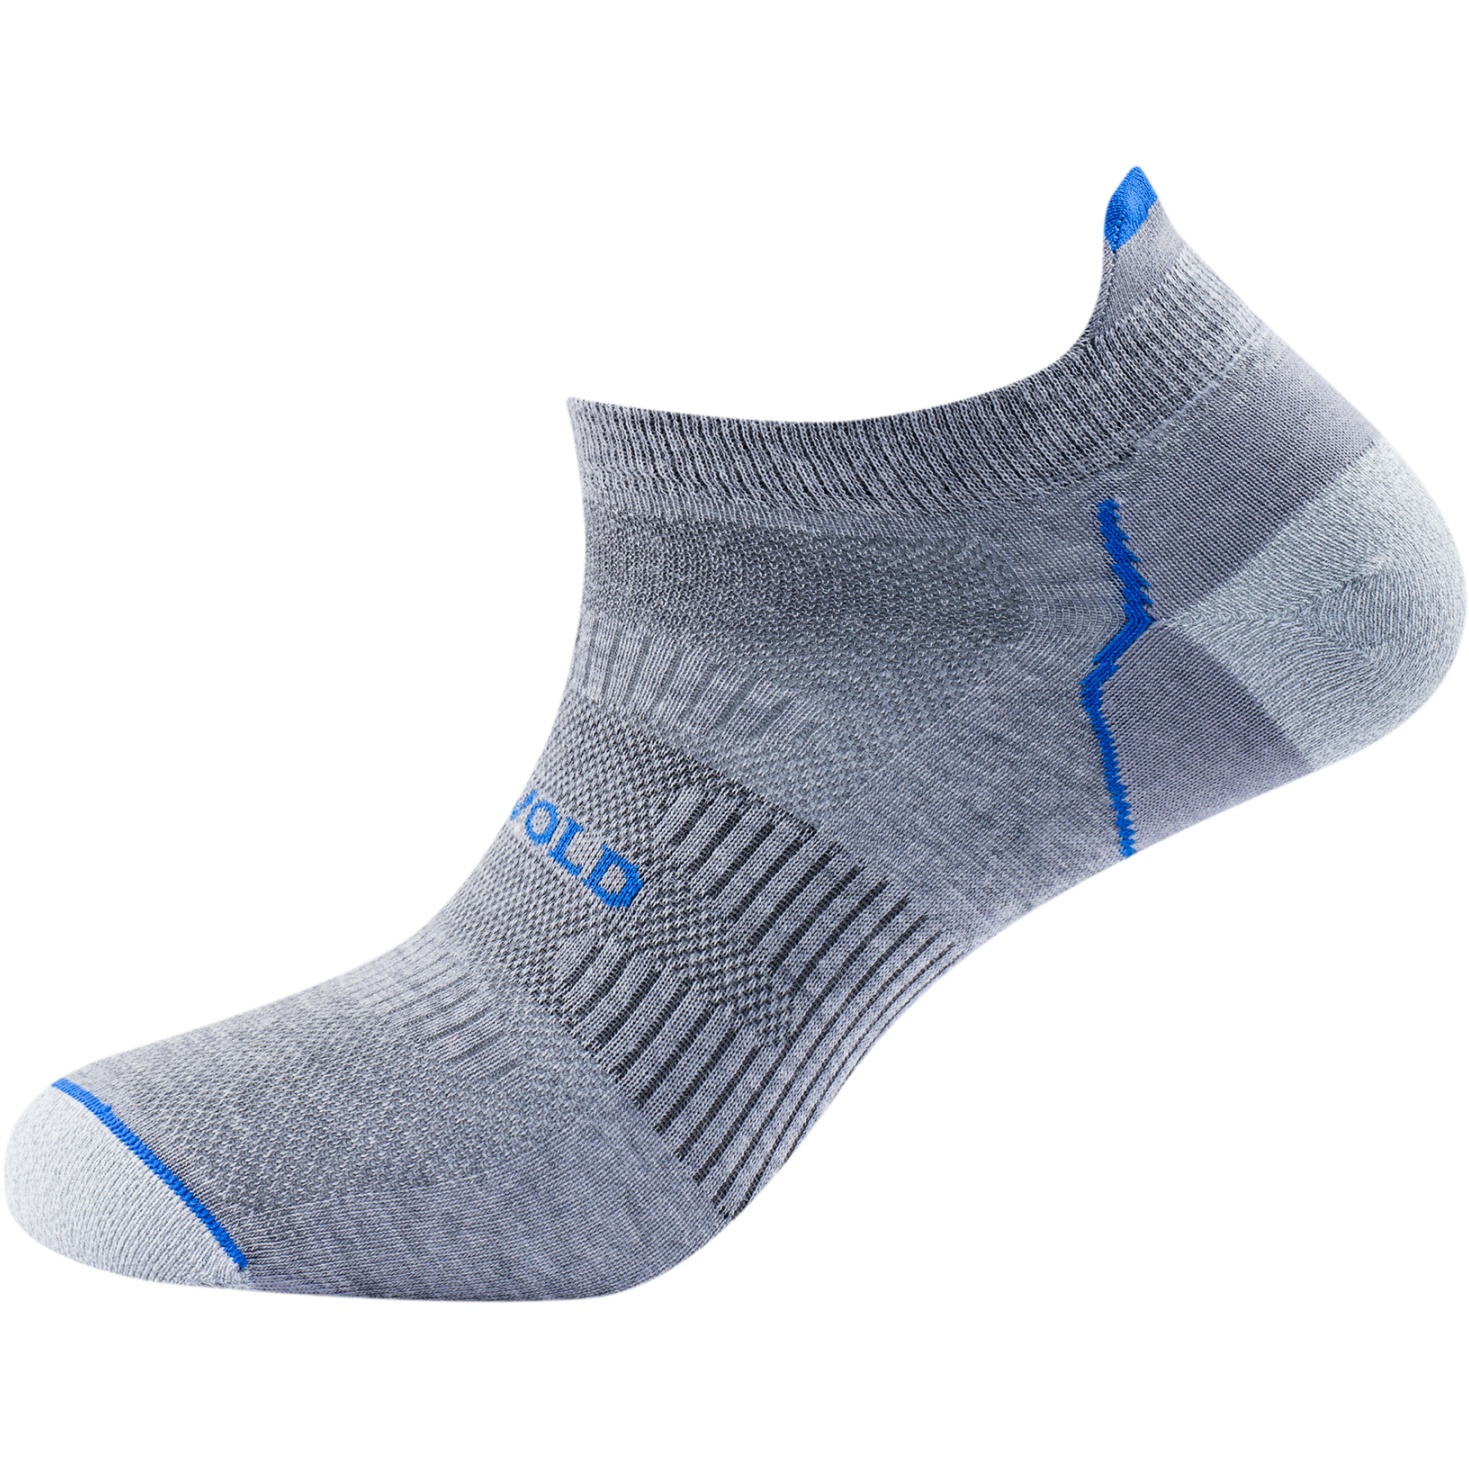 Produktbild von Devold Running Merino Low Socken - 770A Grey Melange